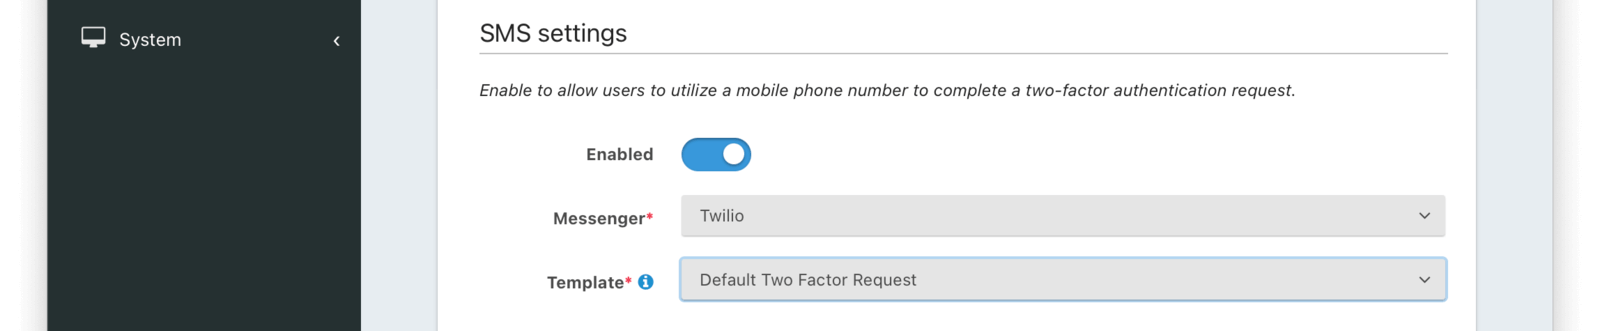 Tenant Configuration - MFA SMS settings